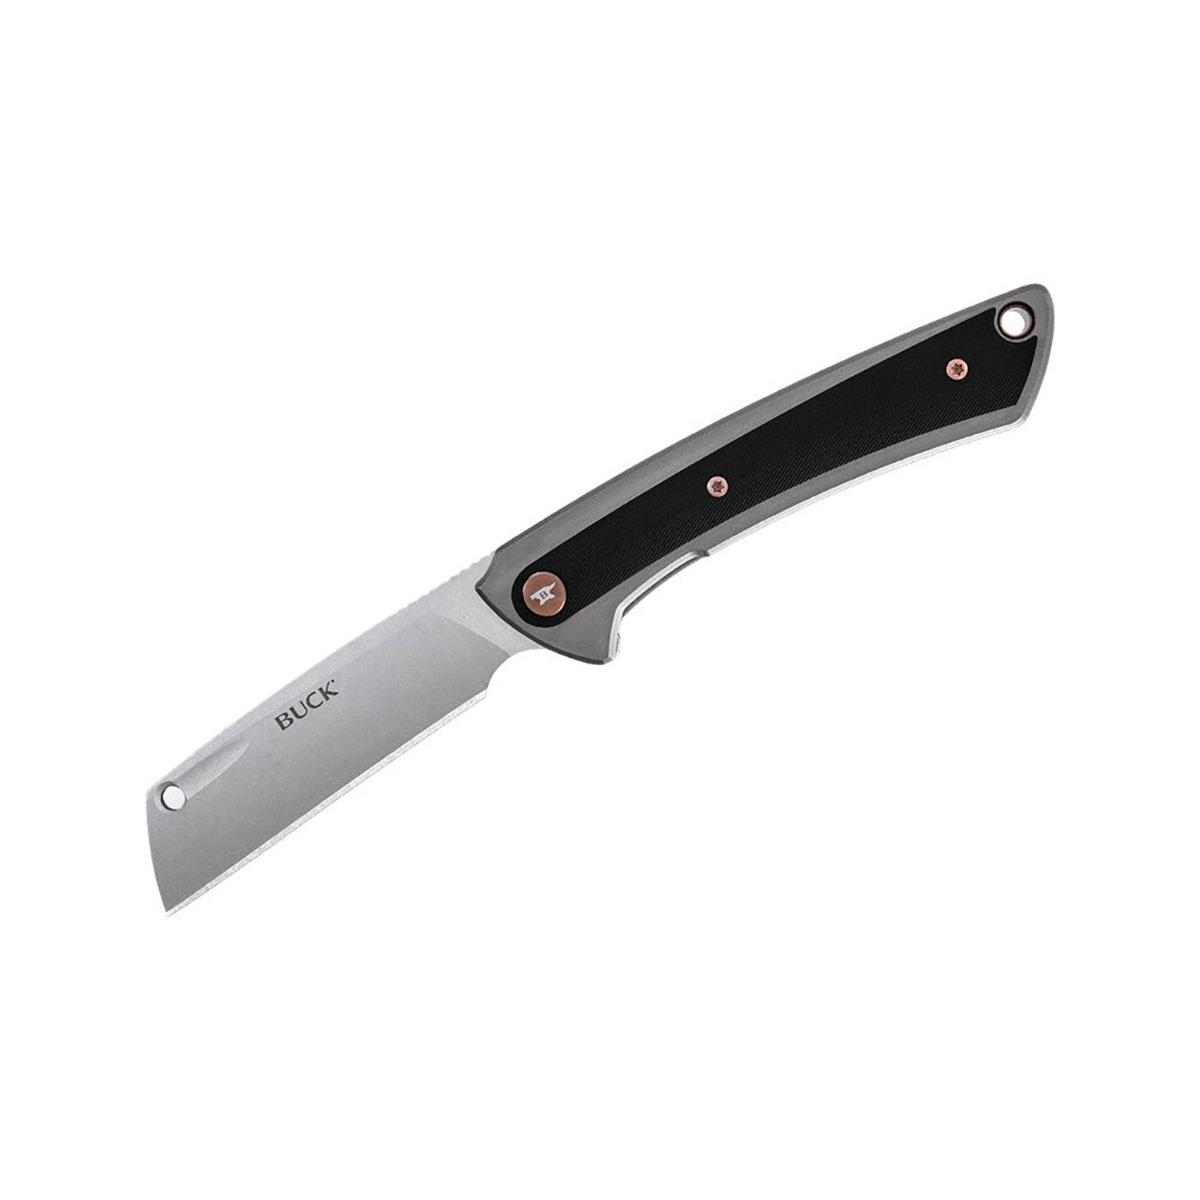 Нож HiLine склад., рук-ть алюминий/G10, клинок D2 (B0263GYS) BUCK Buck Knives варенница ячейка 7 5×4 см алюминий